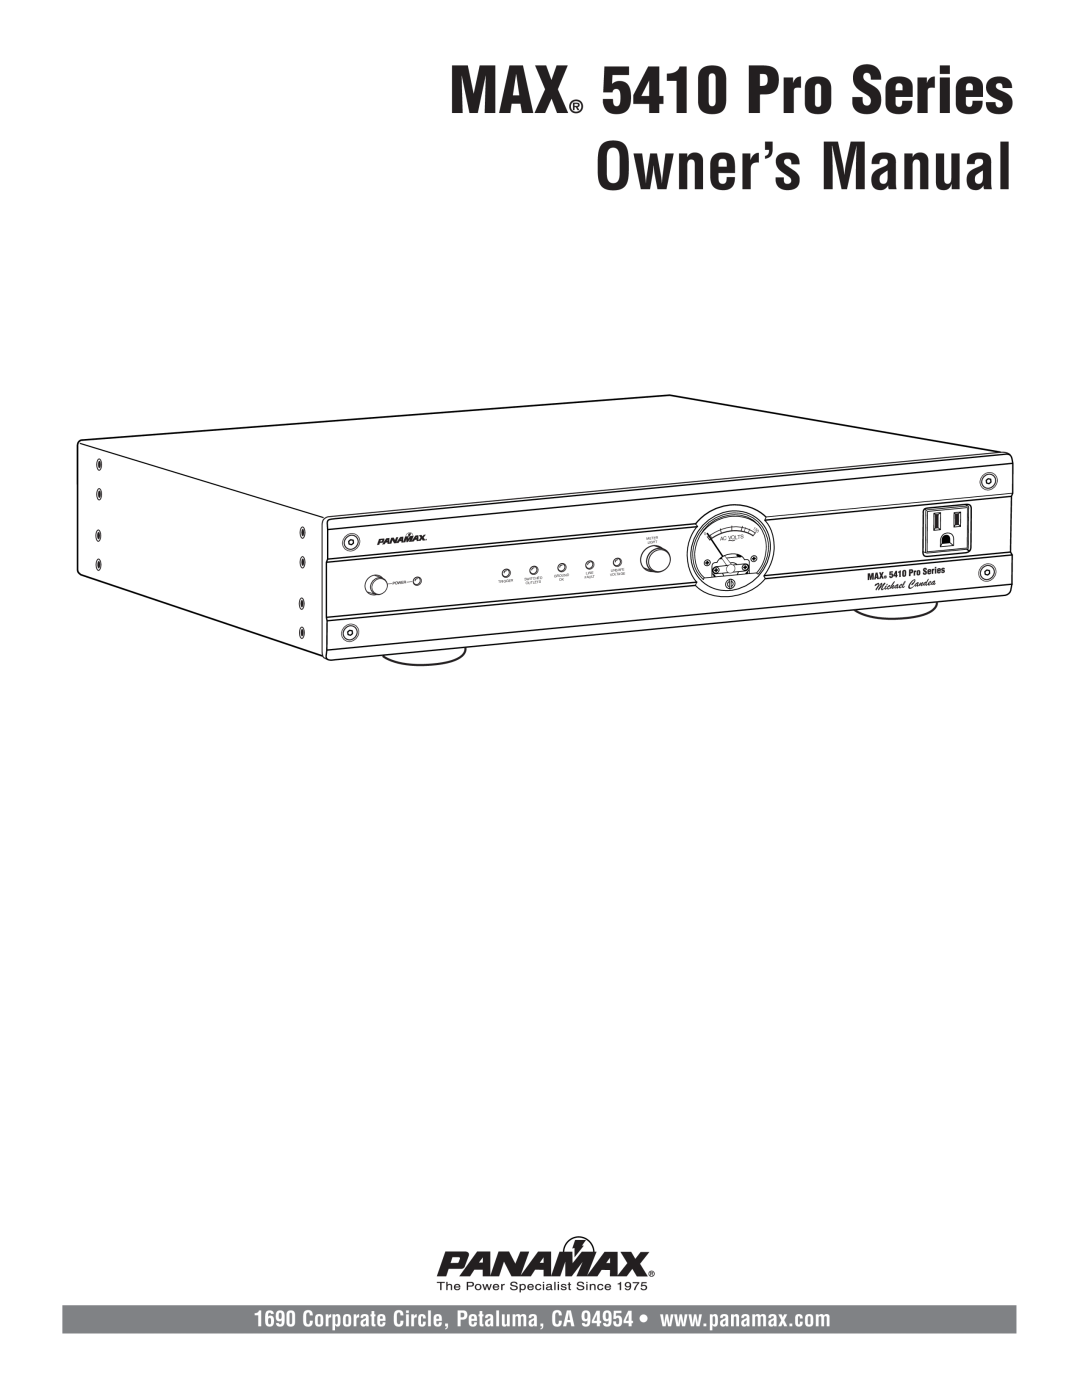 Panamax owner manual Owner’s Manual, MAX 5410 Pro Series 